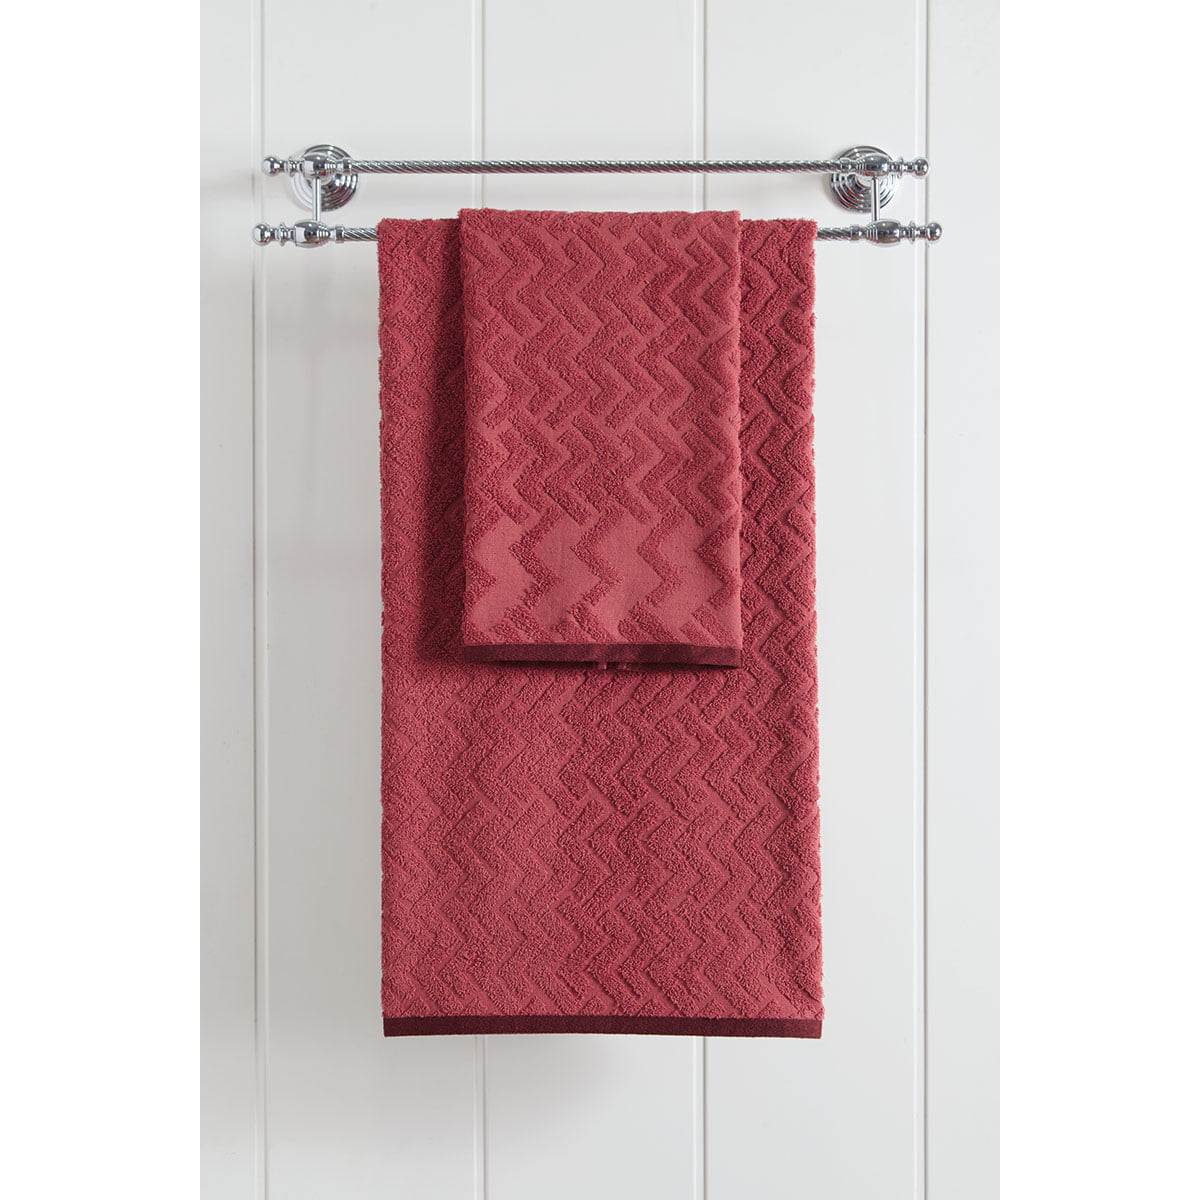 Πετσέτα μπάνιου Art 3238  70×140  Κόκκινο Beauty Home